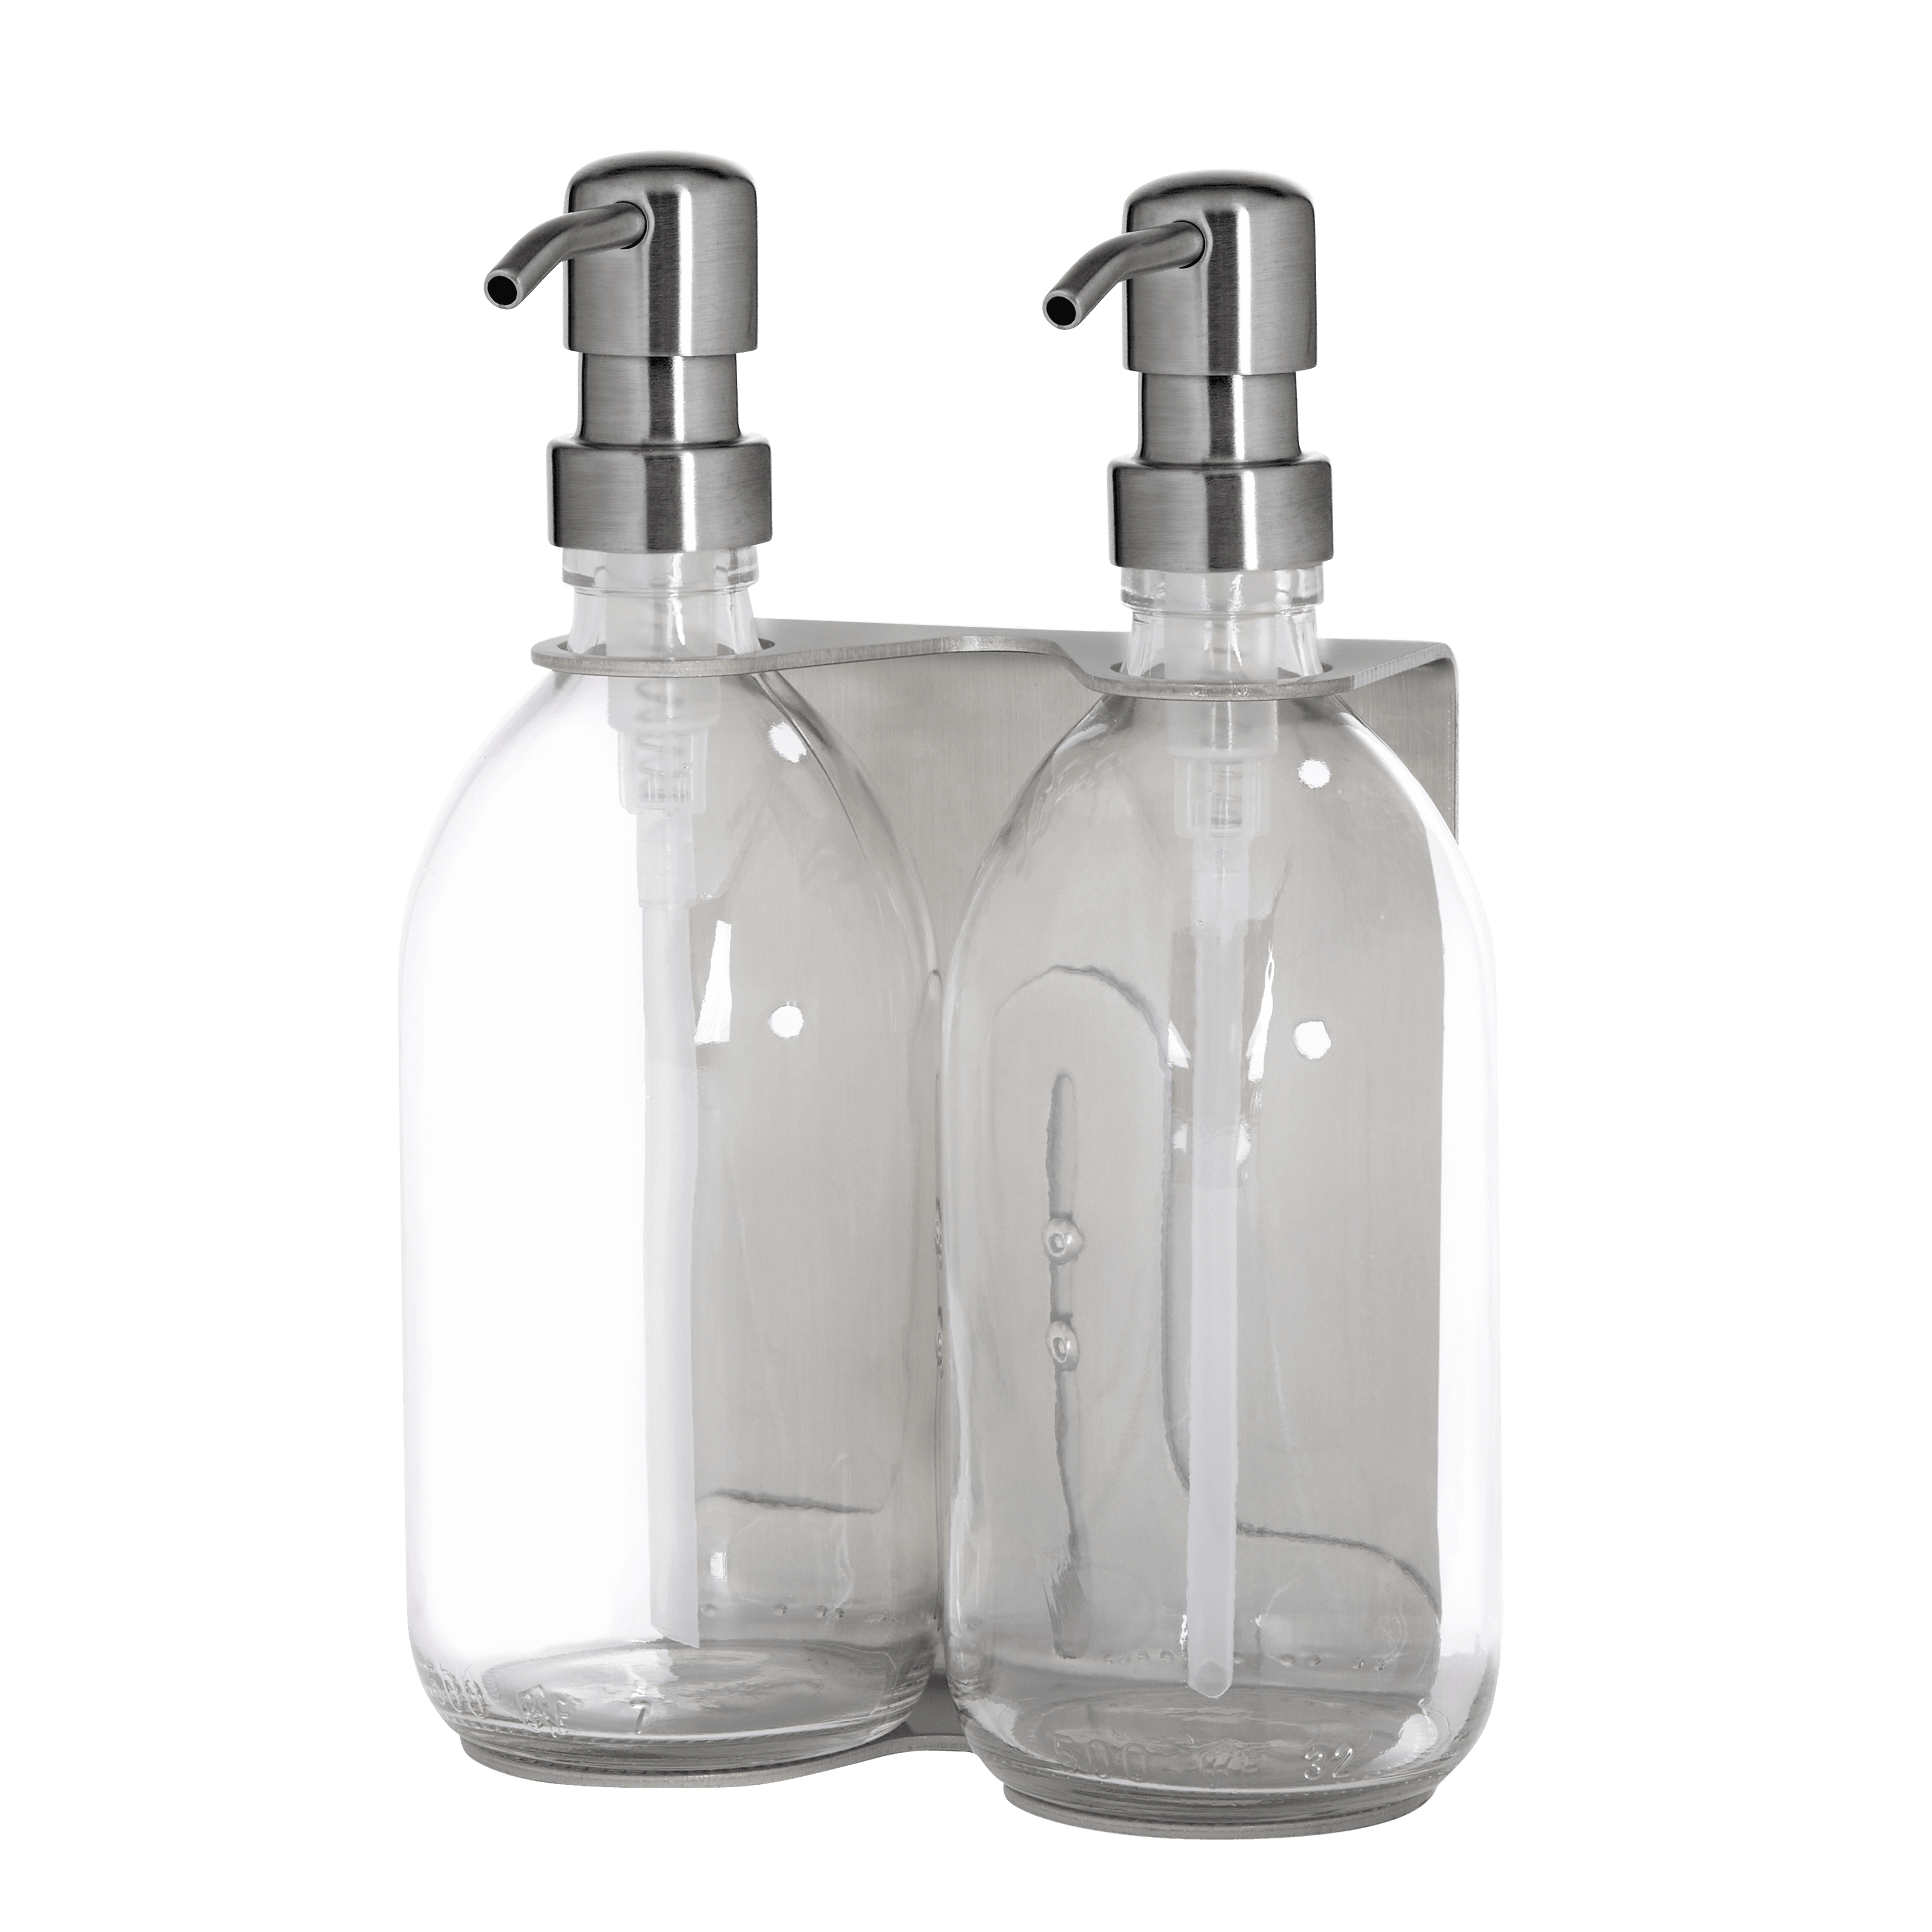 Dispensador de jabón de doble pared plateado satinado con botellas dispensadoras transparentes y bomba de metal plateado a juego